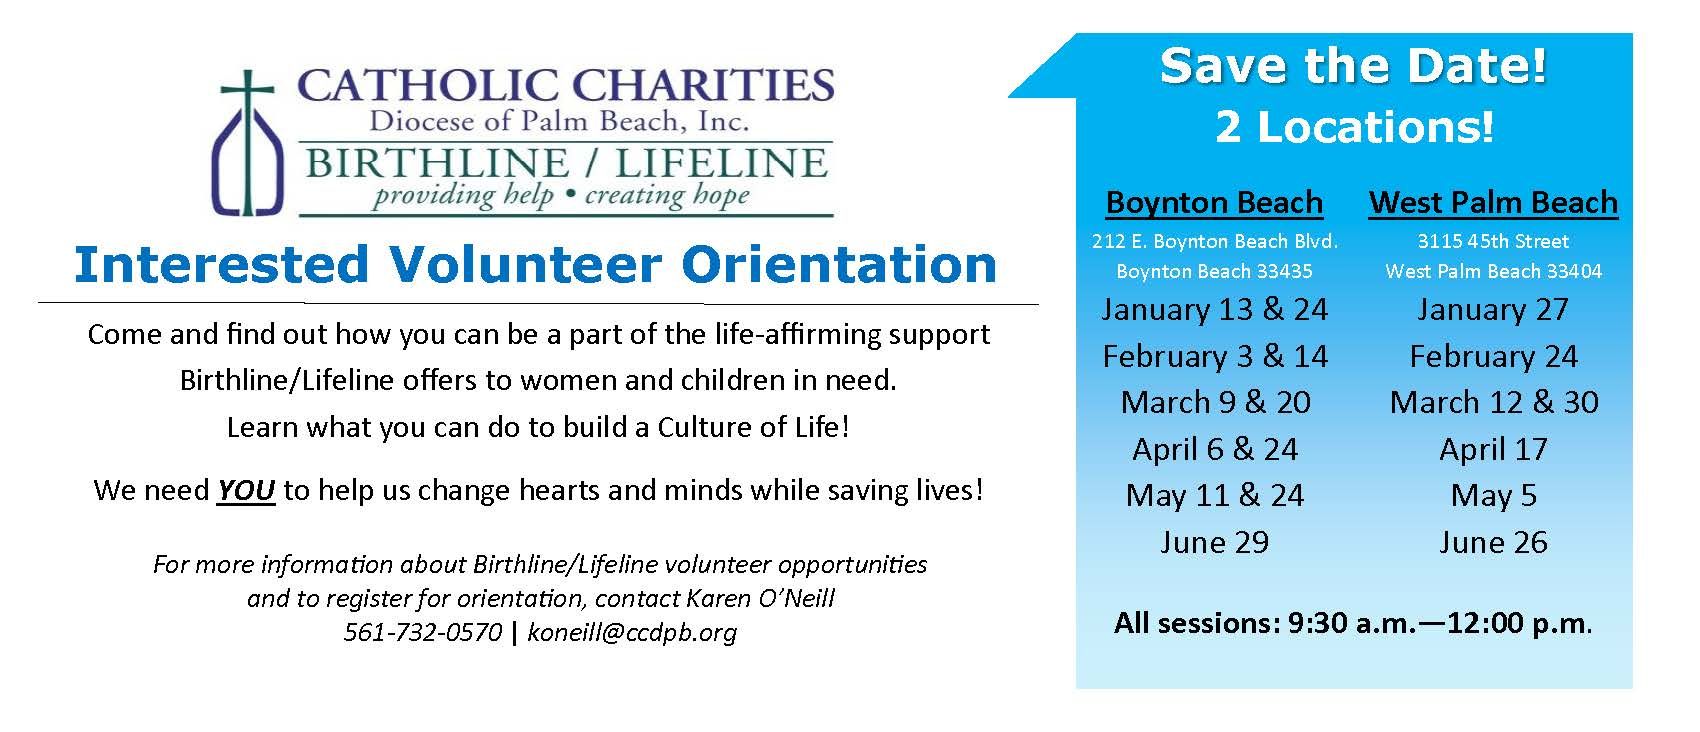 Birthline/Lifeline Volunteer Orientation - West Palm Beach : Events ...